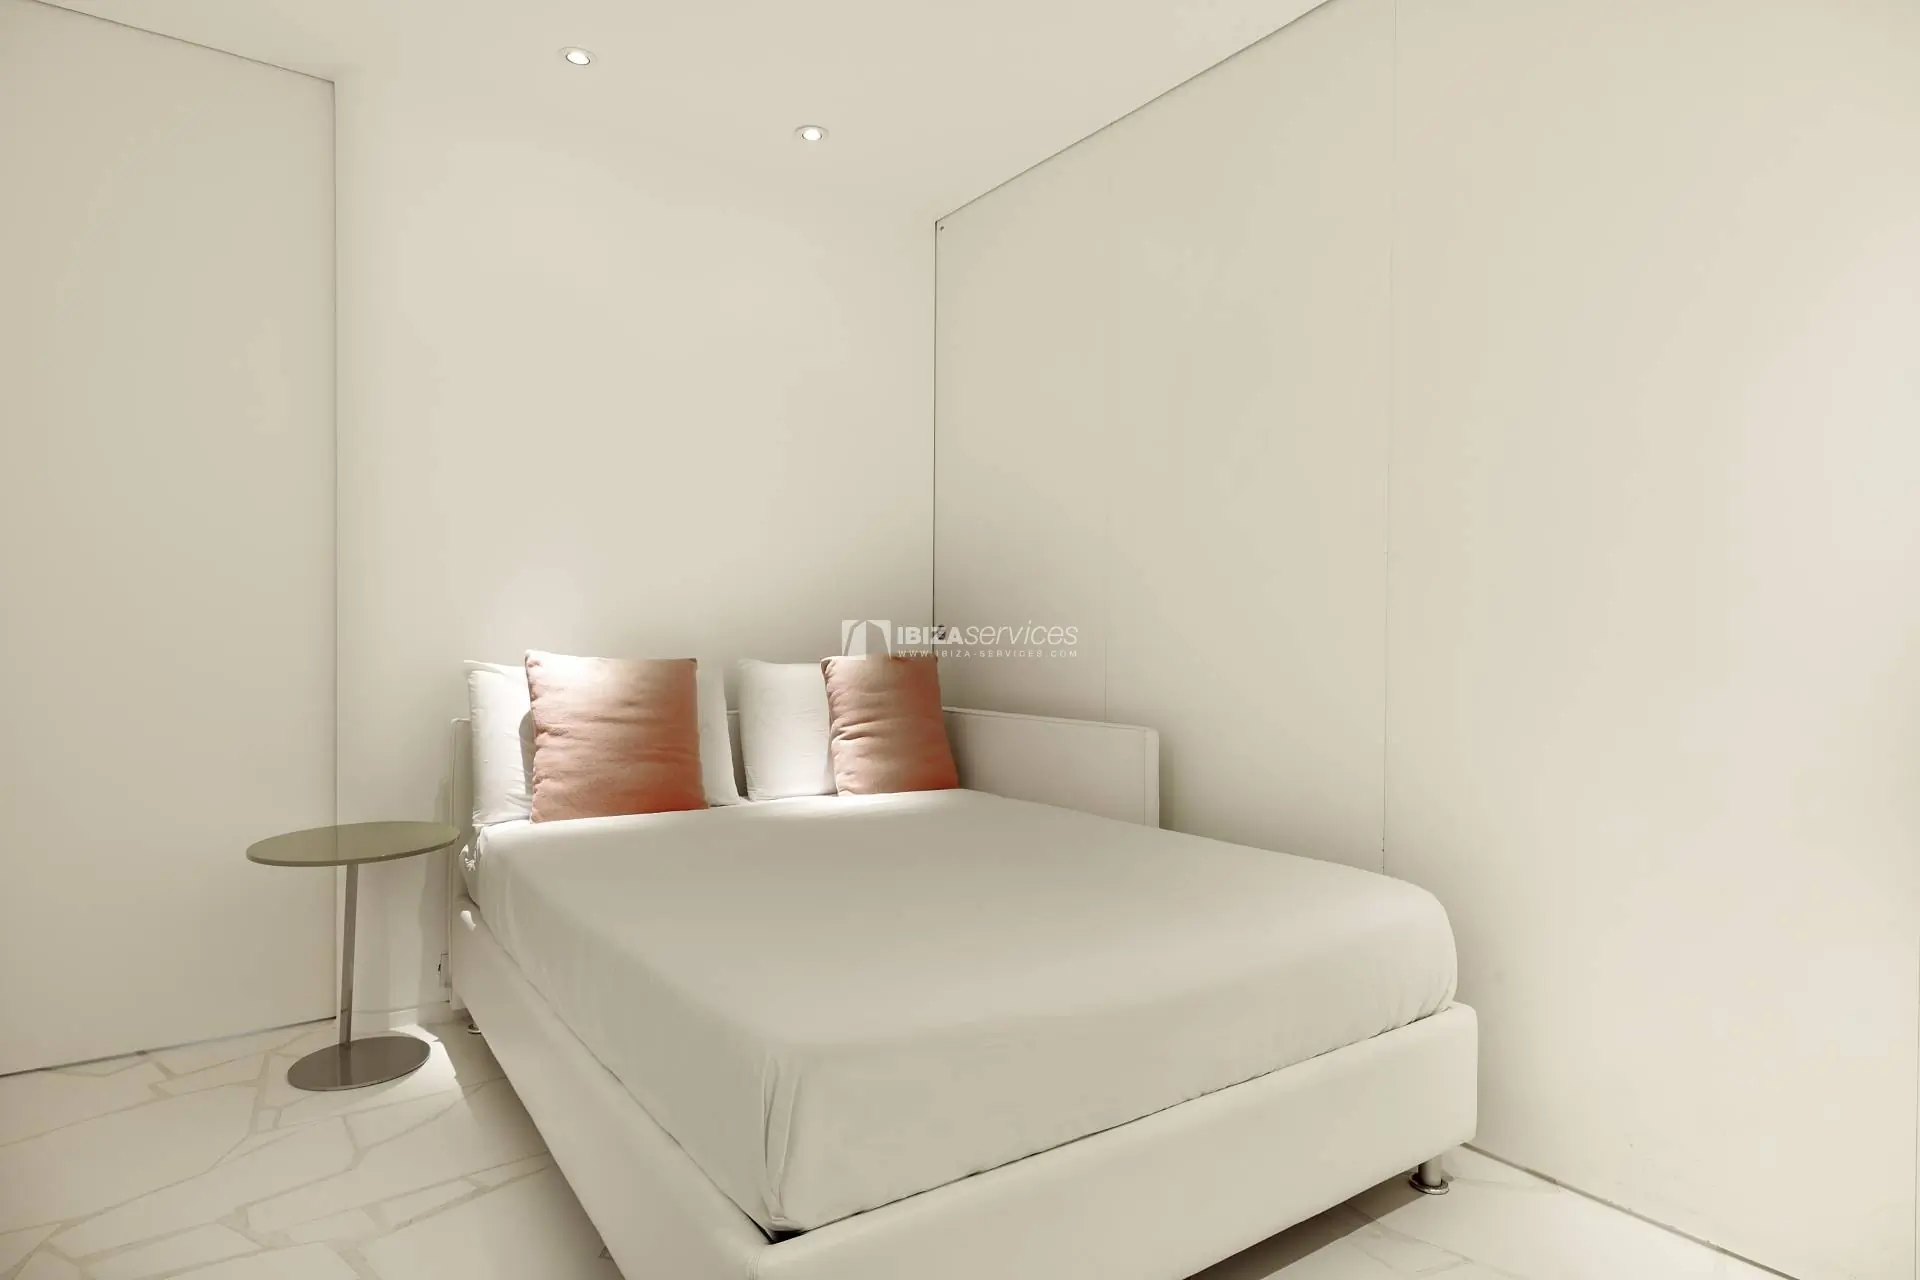 1051 Las Boas de Ibiza lujoso apartamento de 2 dormitorios para alquilar